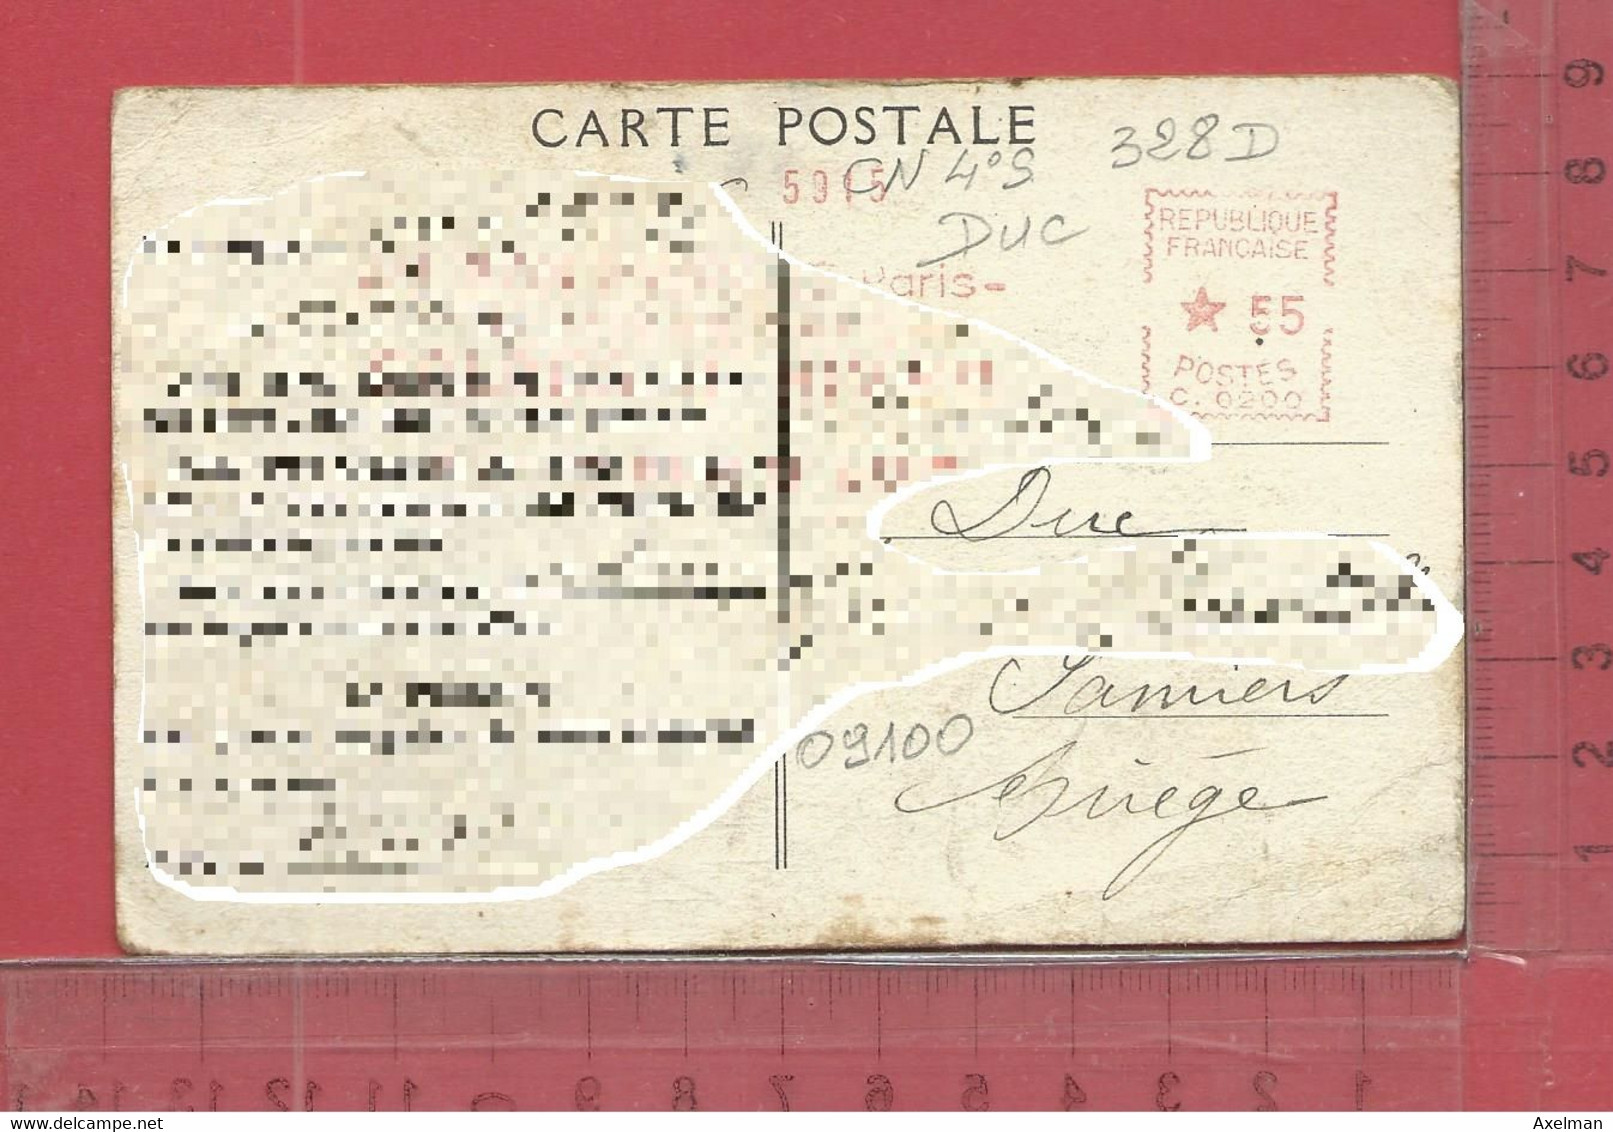 CARTE NOMINATIVE : DUC    à  09100  Pamiers - Genealogy